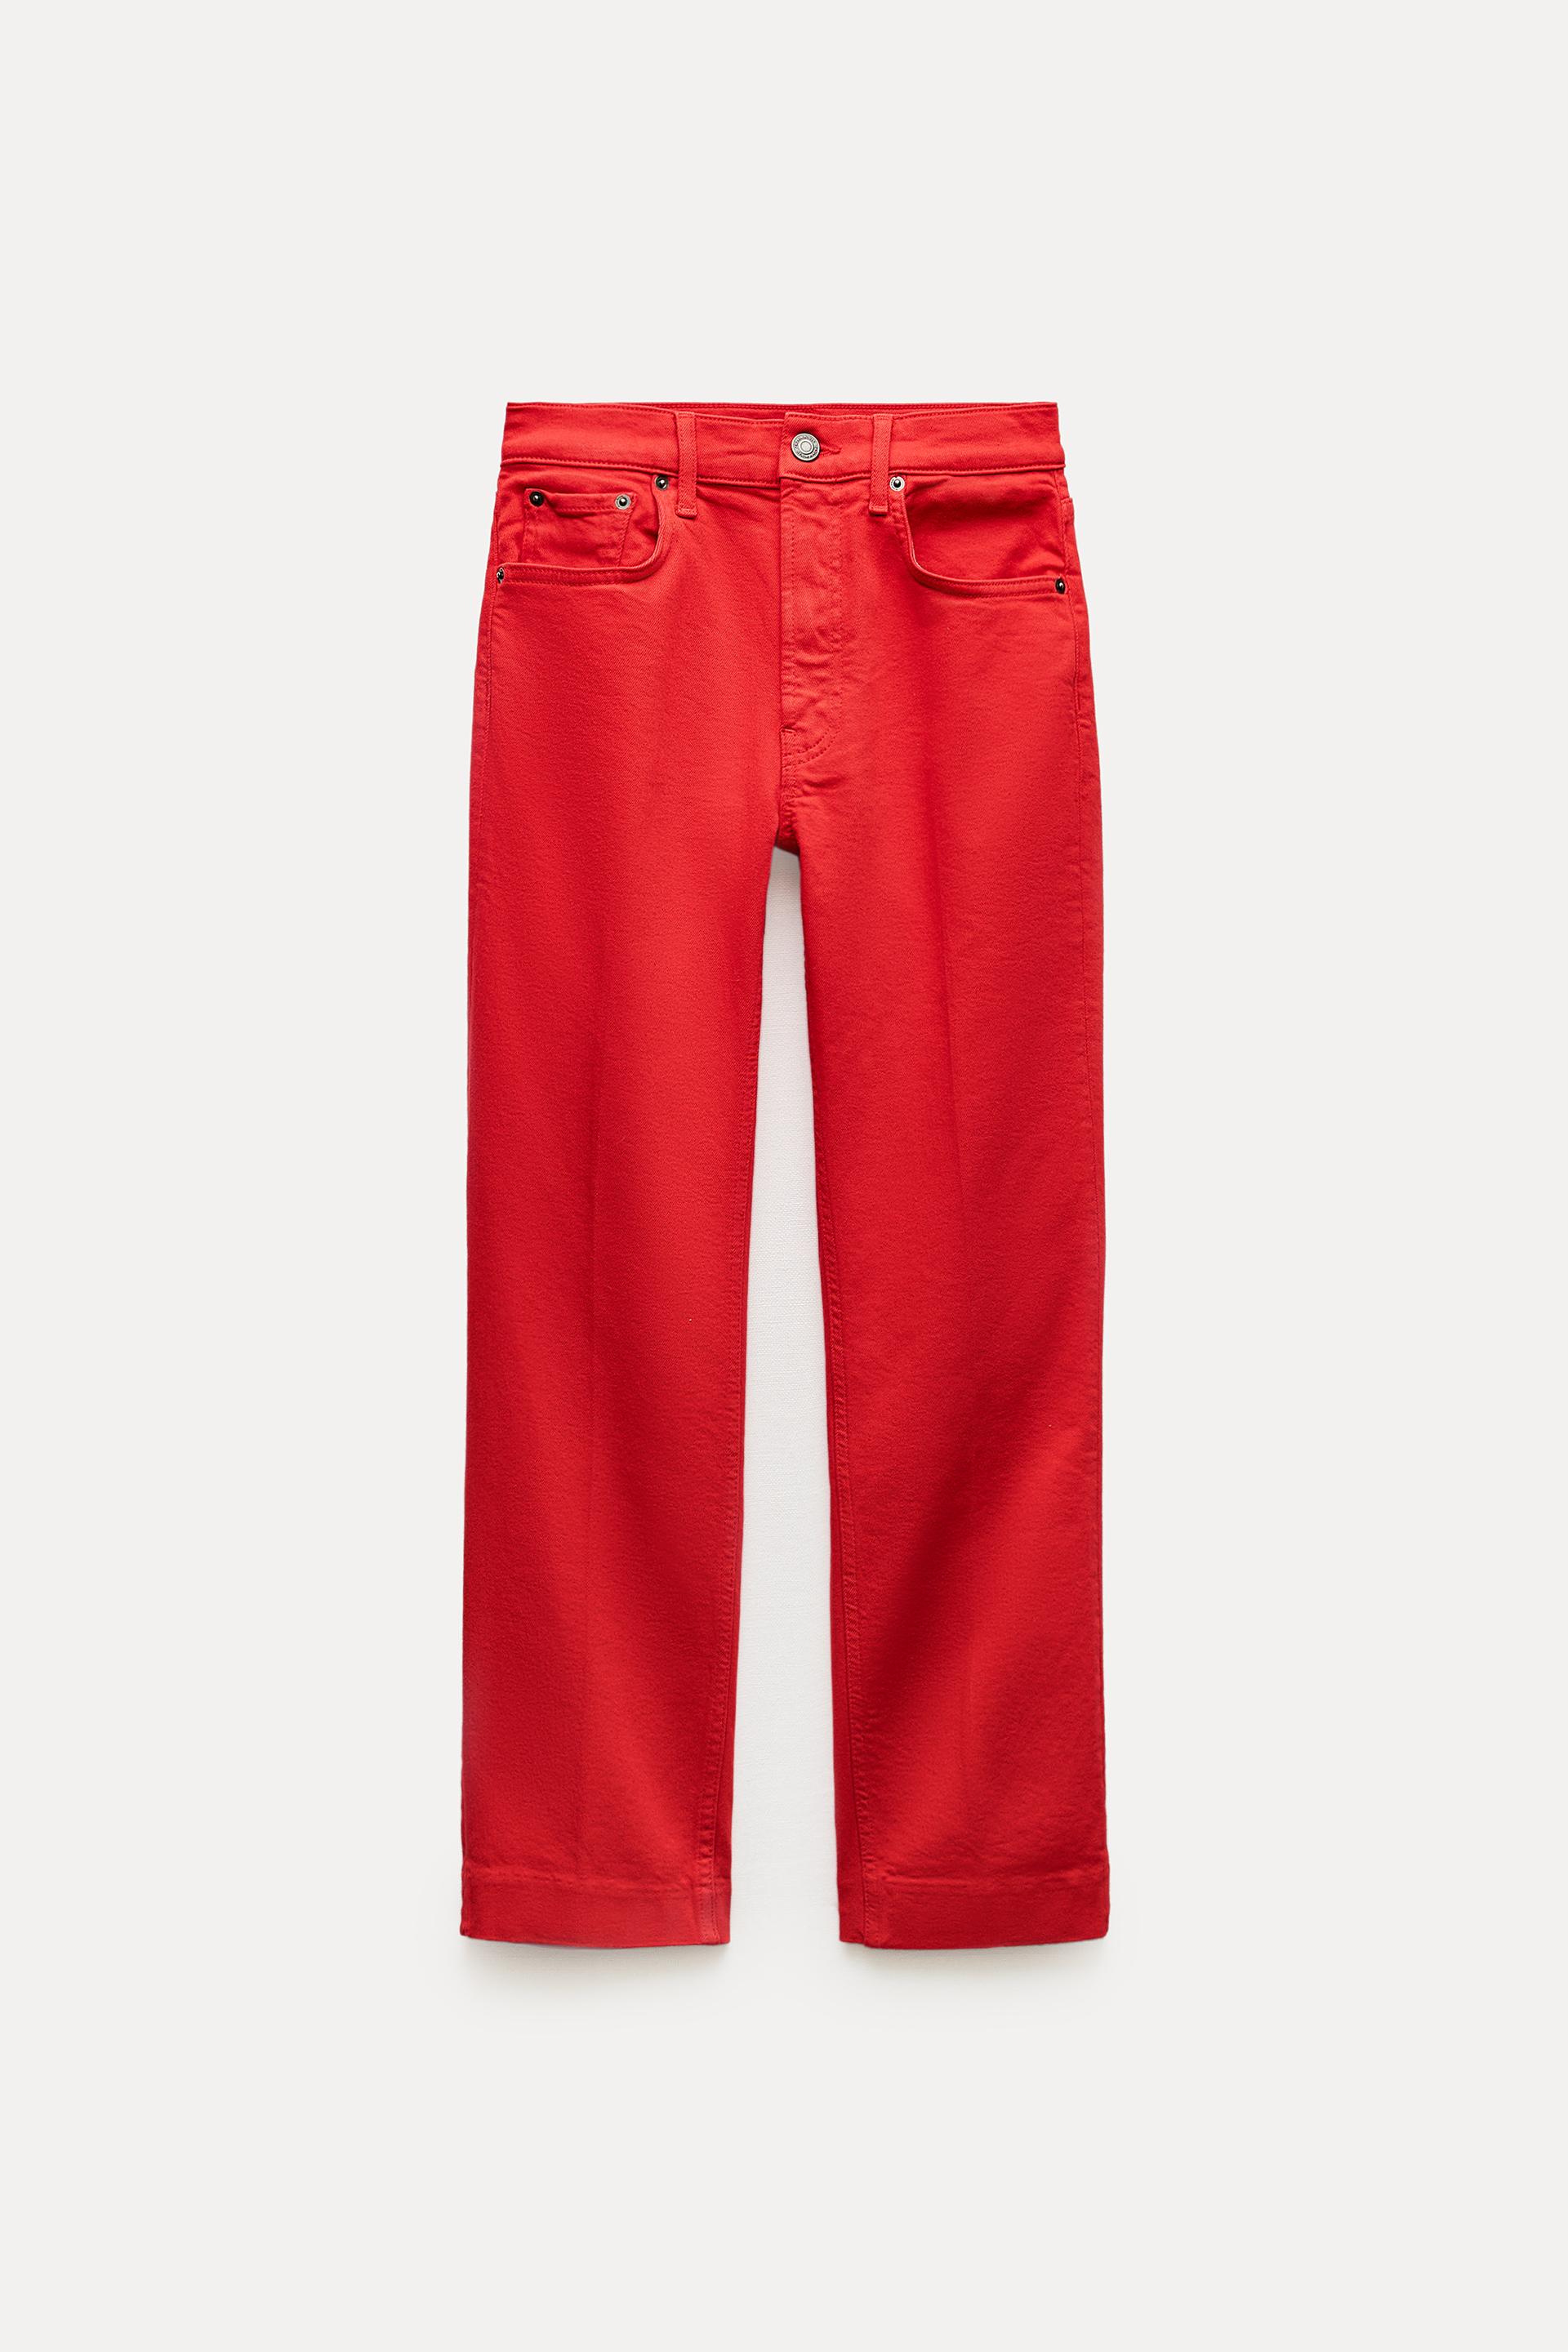 Джинсы Zara ZW Collection Bootcut, красный прямые джинсы zw the marine zara черный